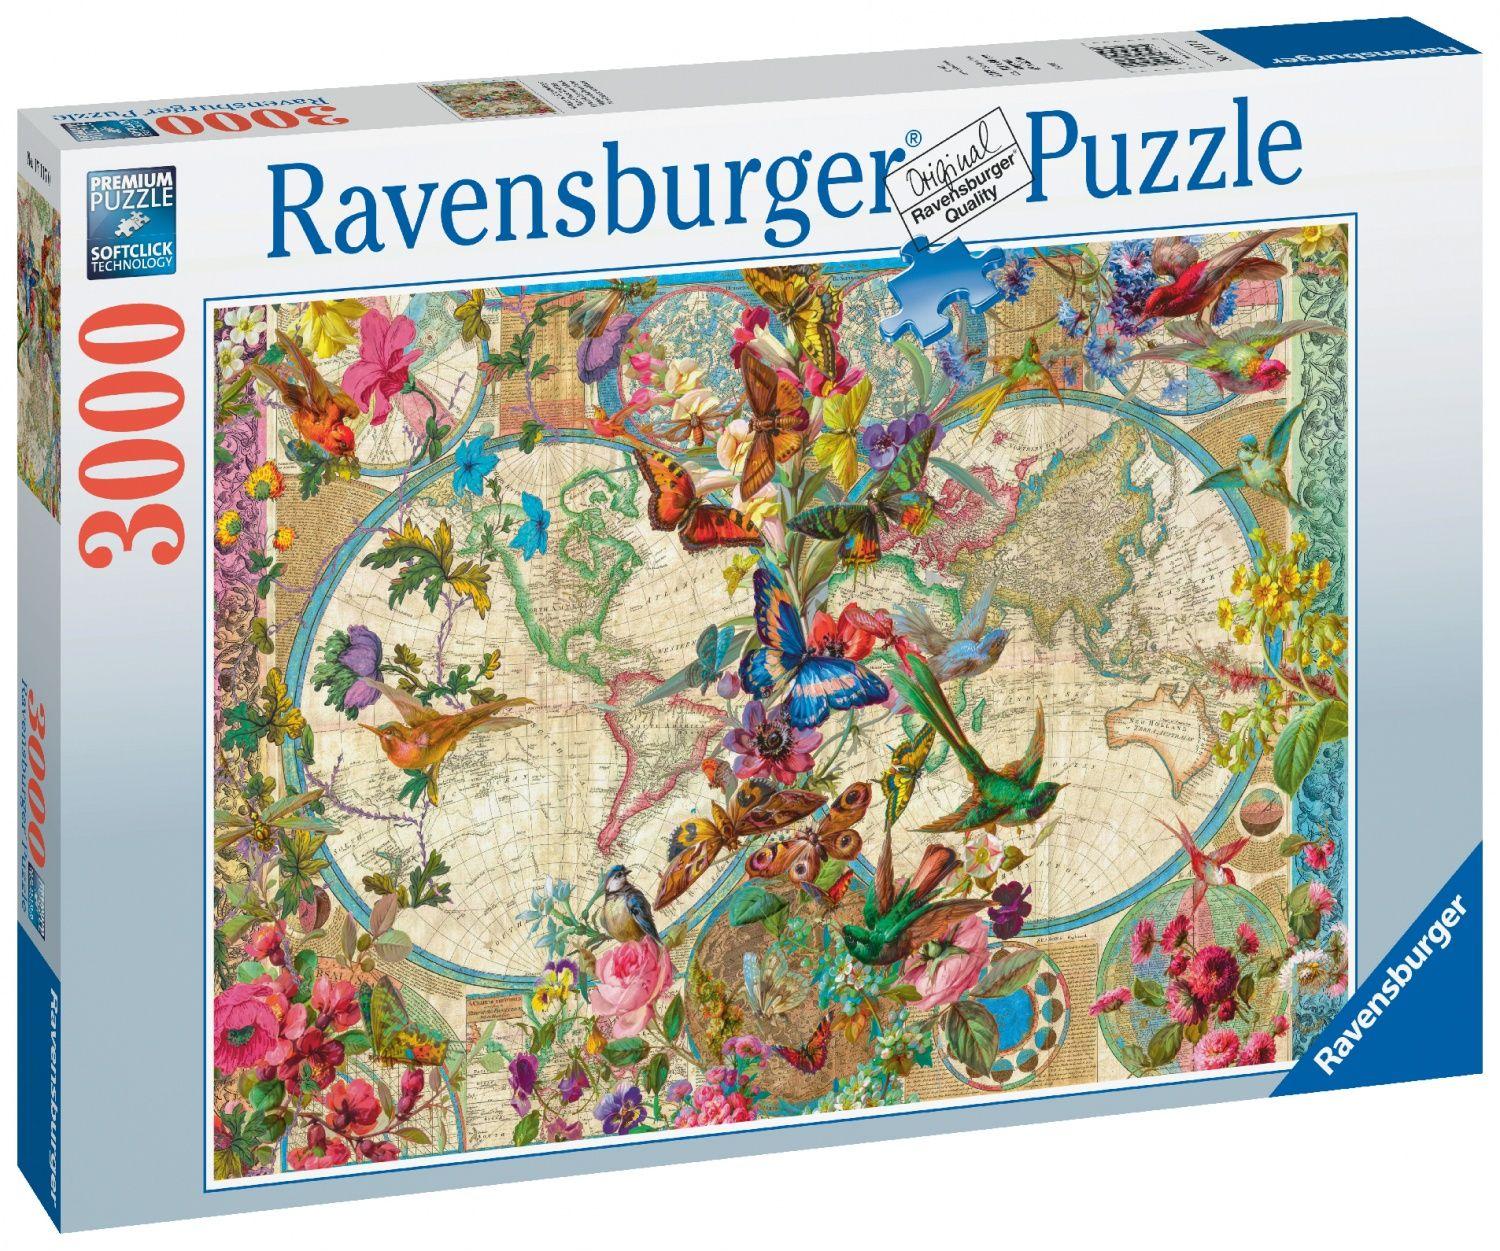 Ravensburger - Puzzle Adulte - Puzzle 2000 pièces - Manoir au fil du temps  - Adultes et enfants dès 14 ans - Puzzle de qualité premium fabriqué en